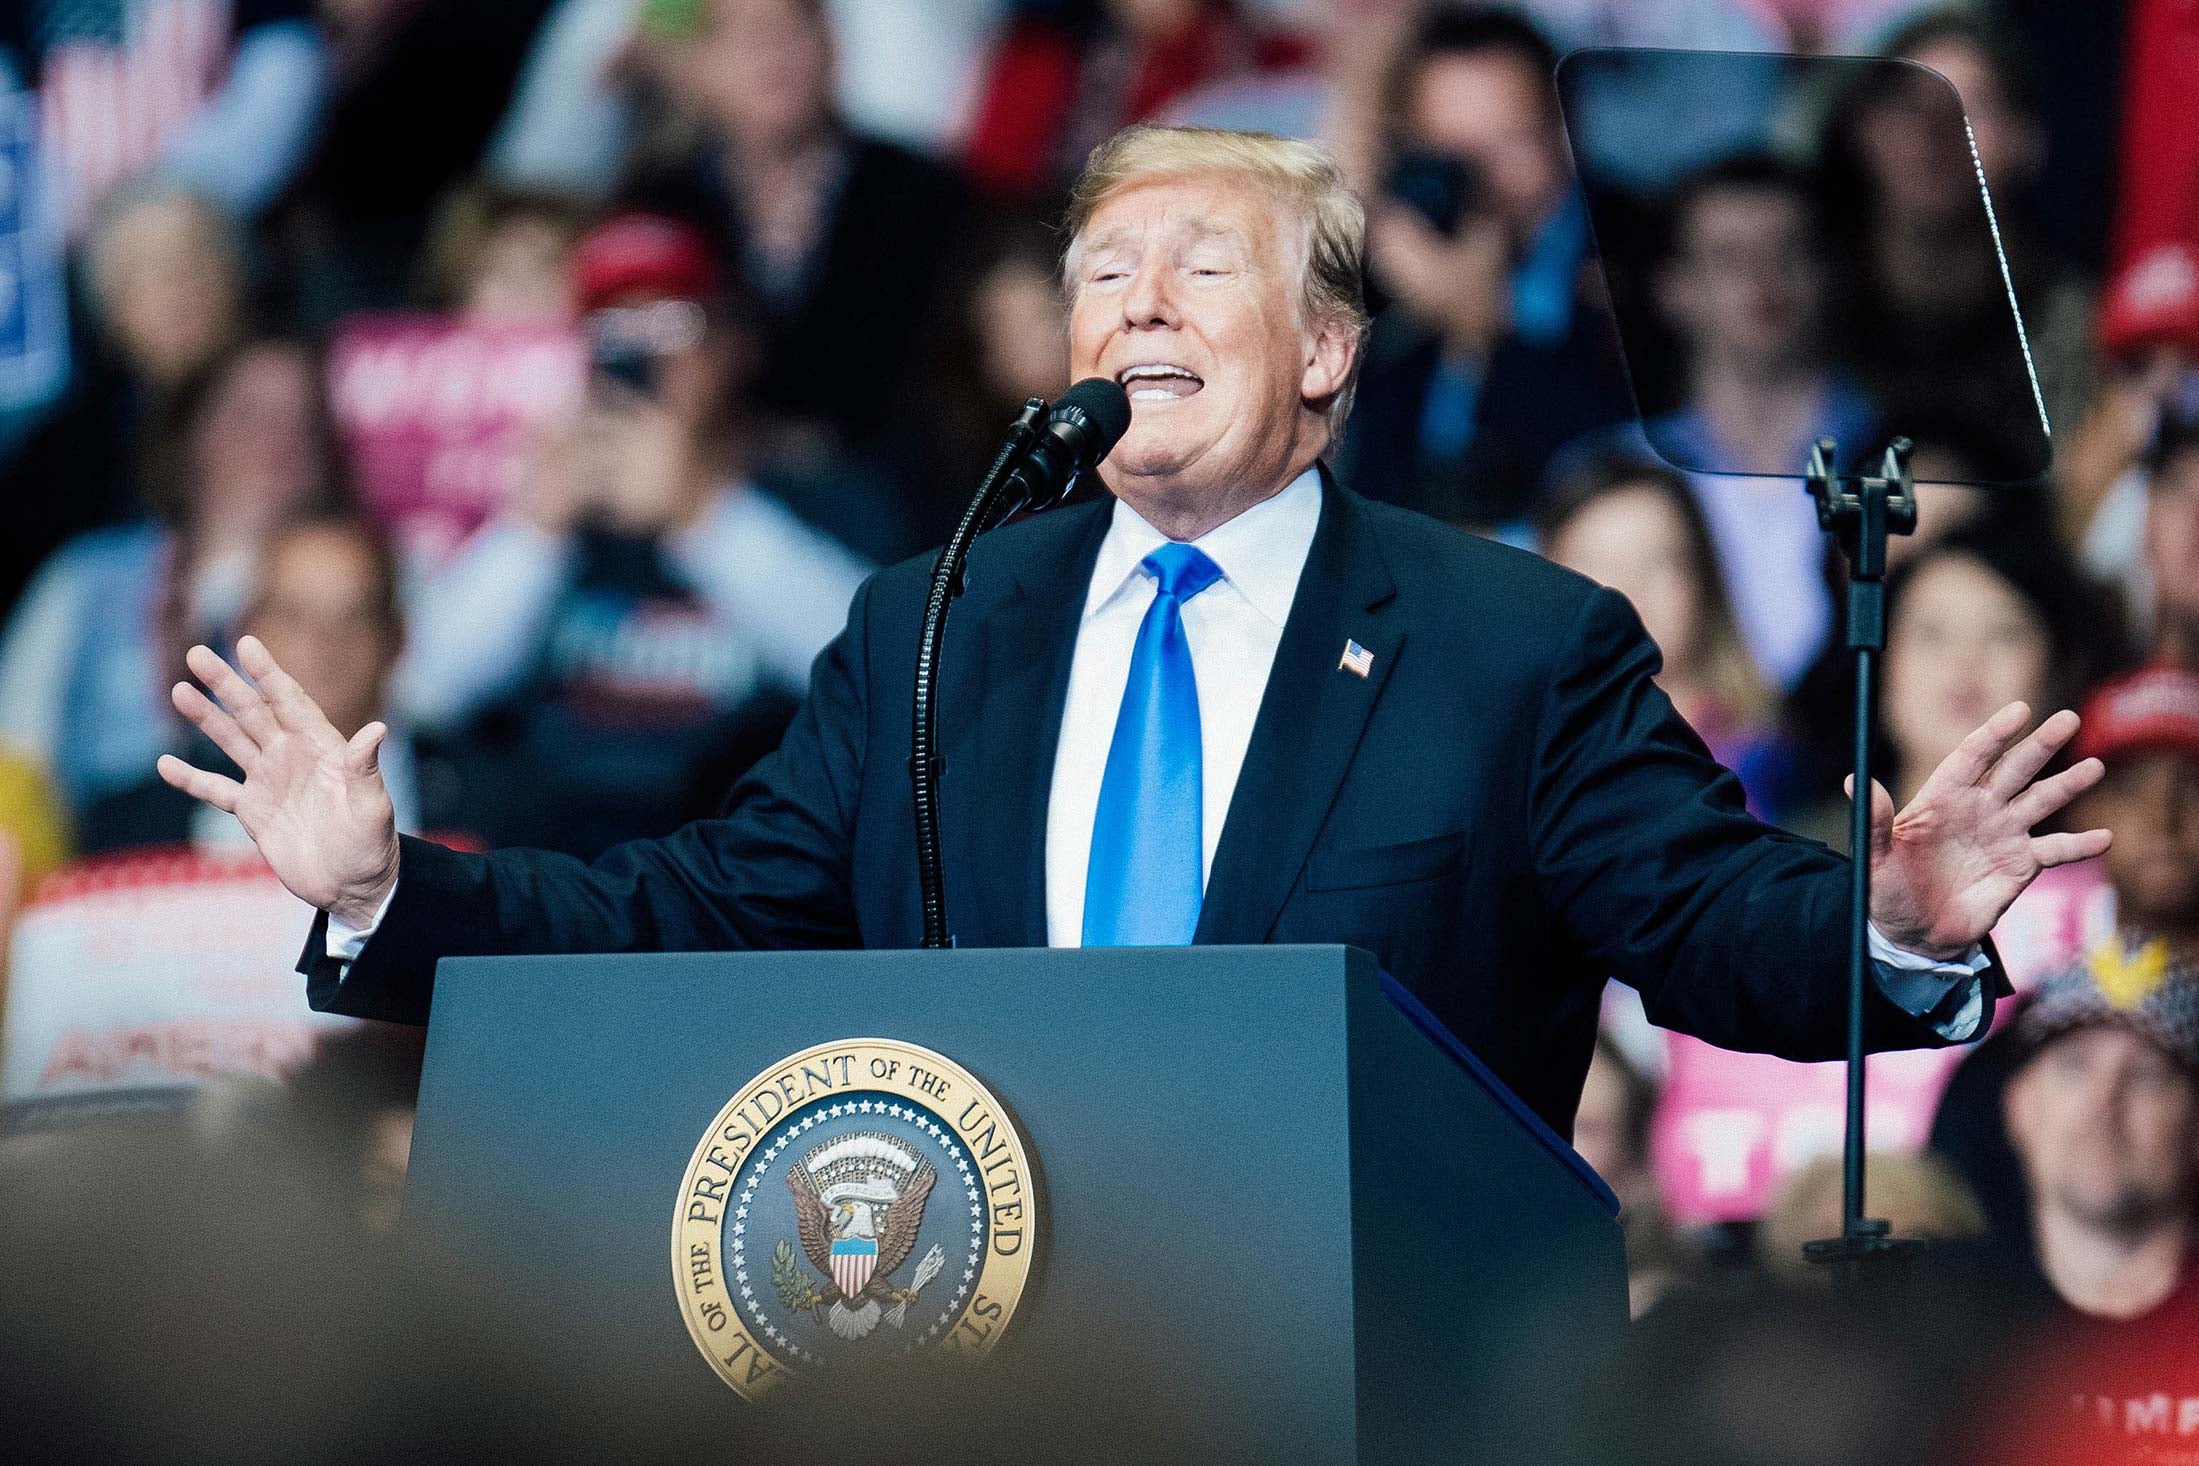 President Donald Trump at a podium at a rally.